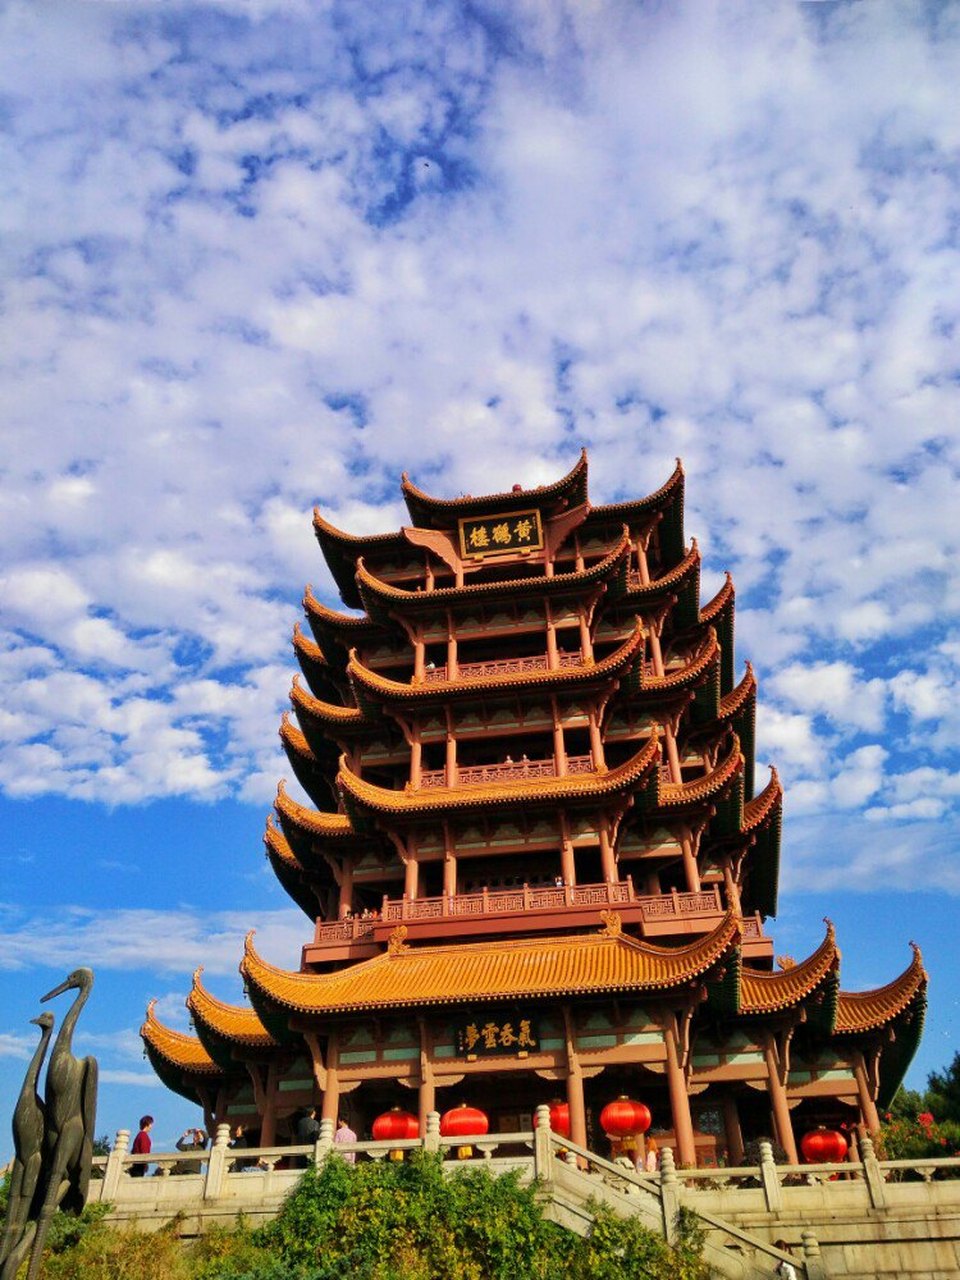 黄鹤楼位于湖北省武汉市长江南岸武昌蛇山之巅,为国家5a级旅游景区